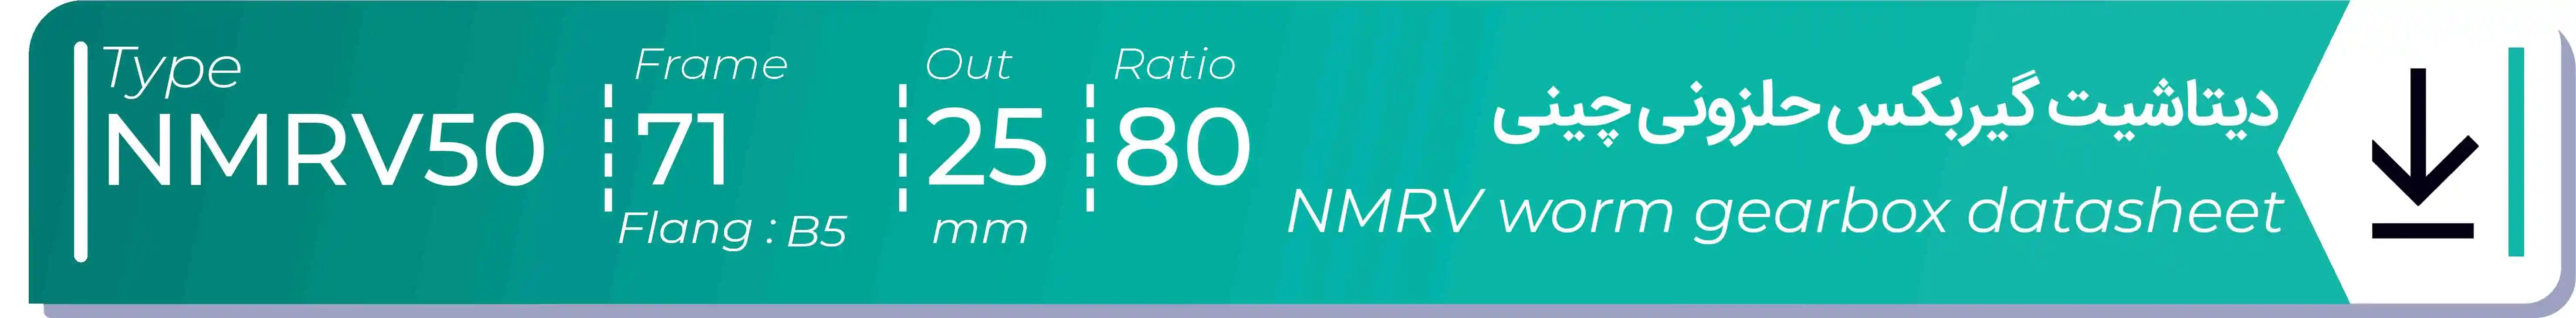  دیتاشیت و مشخصات فنی گیربکس حلزونی چینی   NMRV50  -  با خروجی 25- میلی متر و نسبت80 و فریم 71